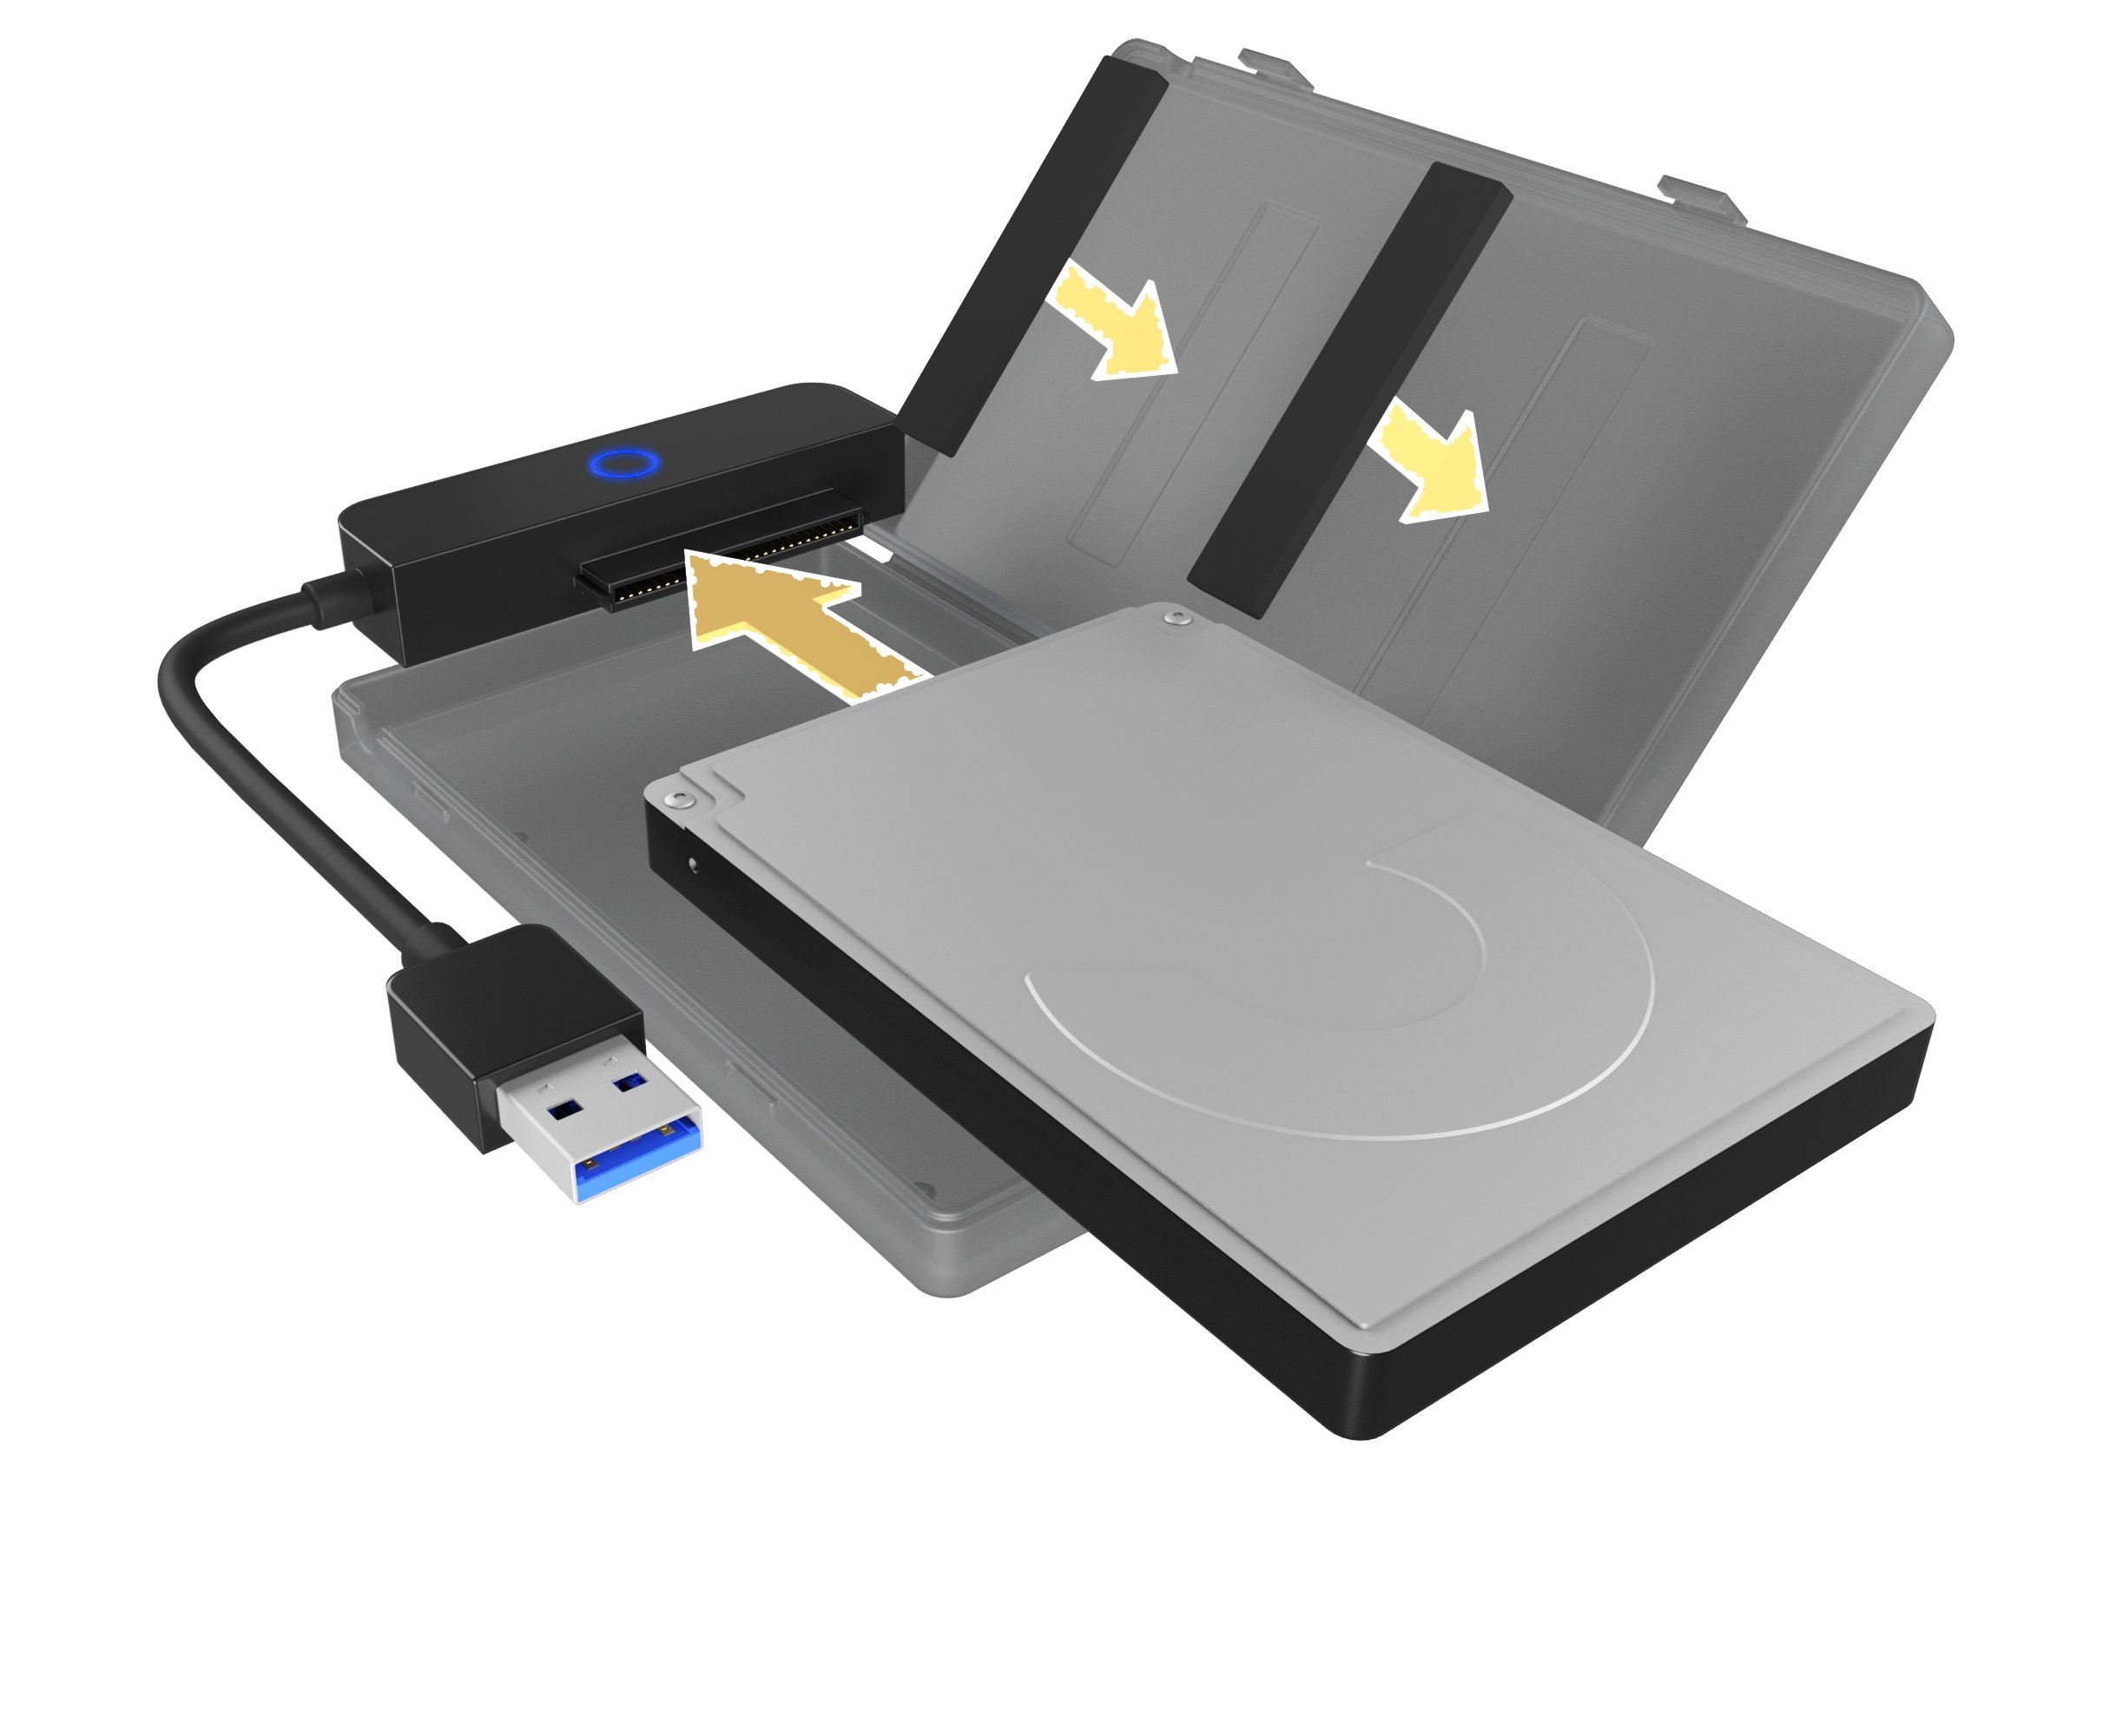 RAIDSONIC ICY BOX Festplattengehäuse 2,5 Zoll, Schwarz SSD, extern